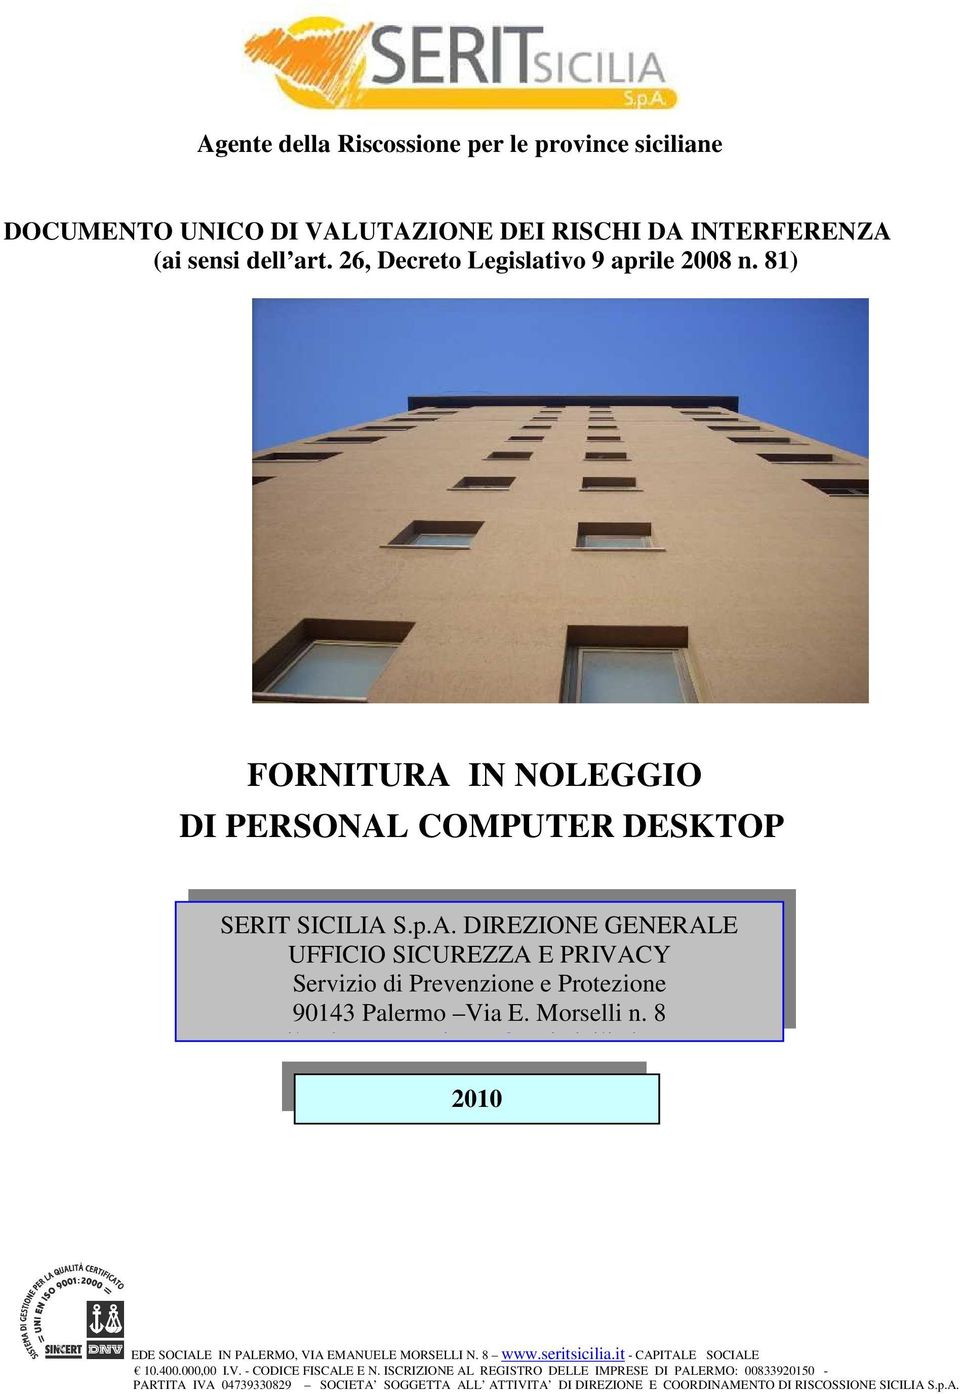 Morselli n. 8 e-mail: sicurezza.privacy@seritsicilia.it 2010 EDE SOCIALE IN PALERMO, VIA EMANUELE MORSELLI N. 8 www.seritsicilia.it - CAPITALE SOCIALE 10.400.000,00 I.V. - CODICE FISCALE E N.